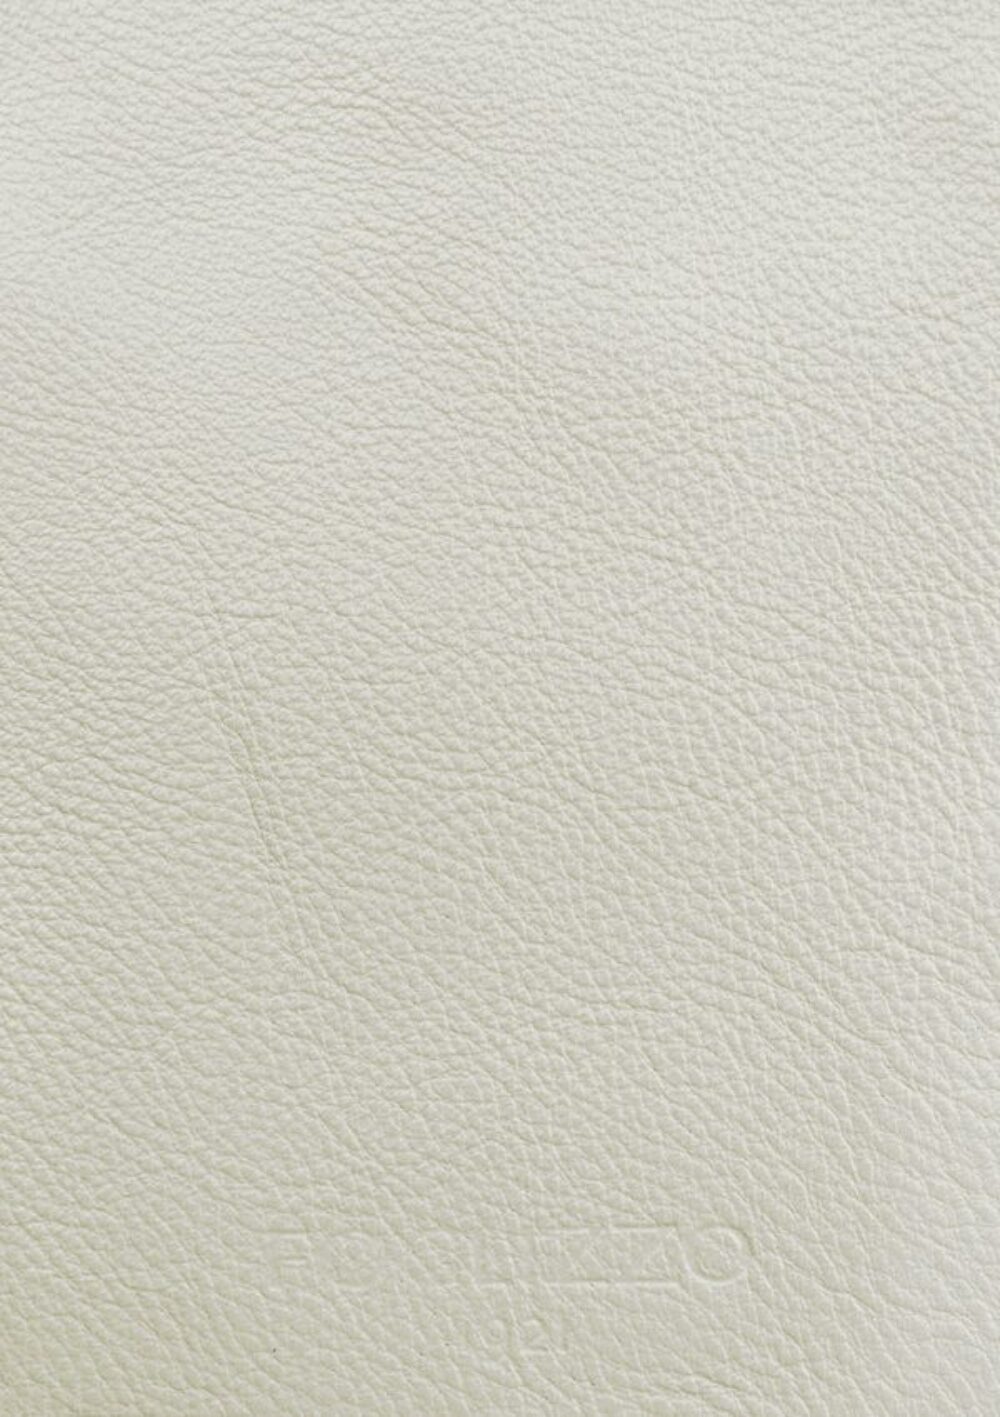 Tapis de luxe design et haut de gamme sur mesure • Basic Pearl White Jade